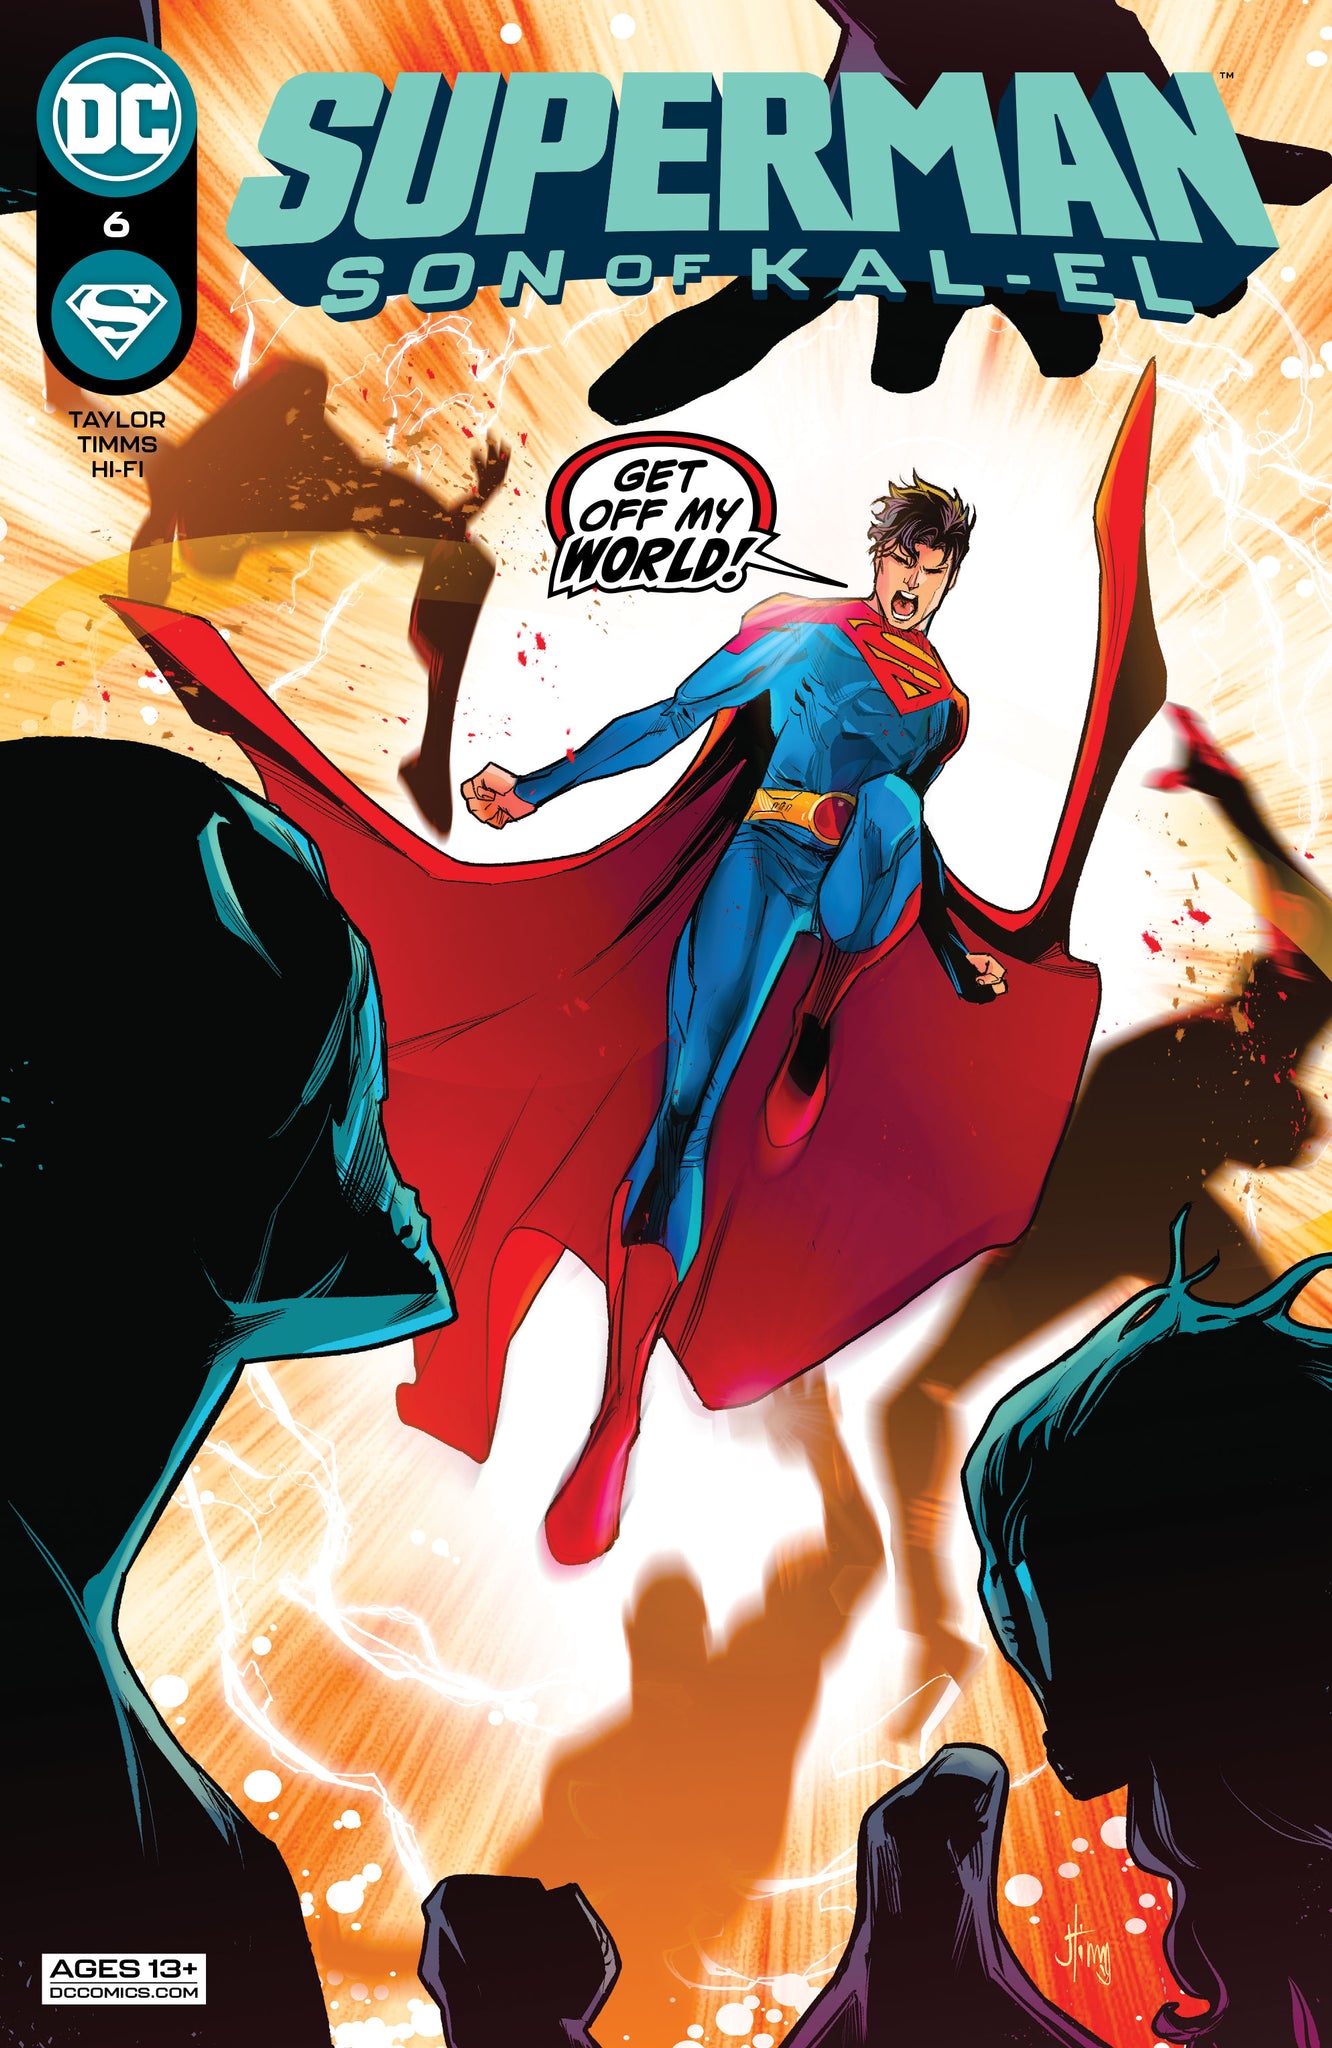 SUPERMAN SON OF KAL-EL #6